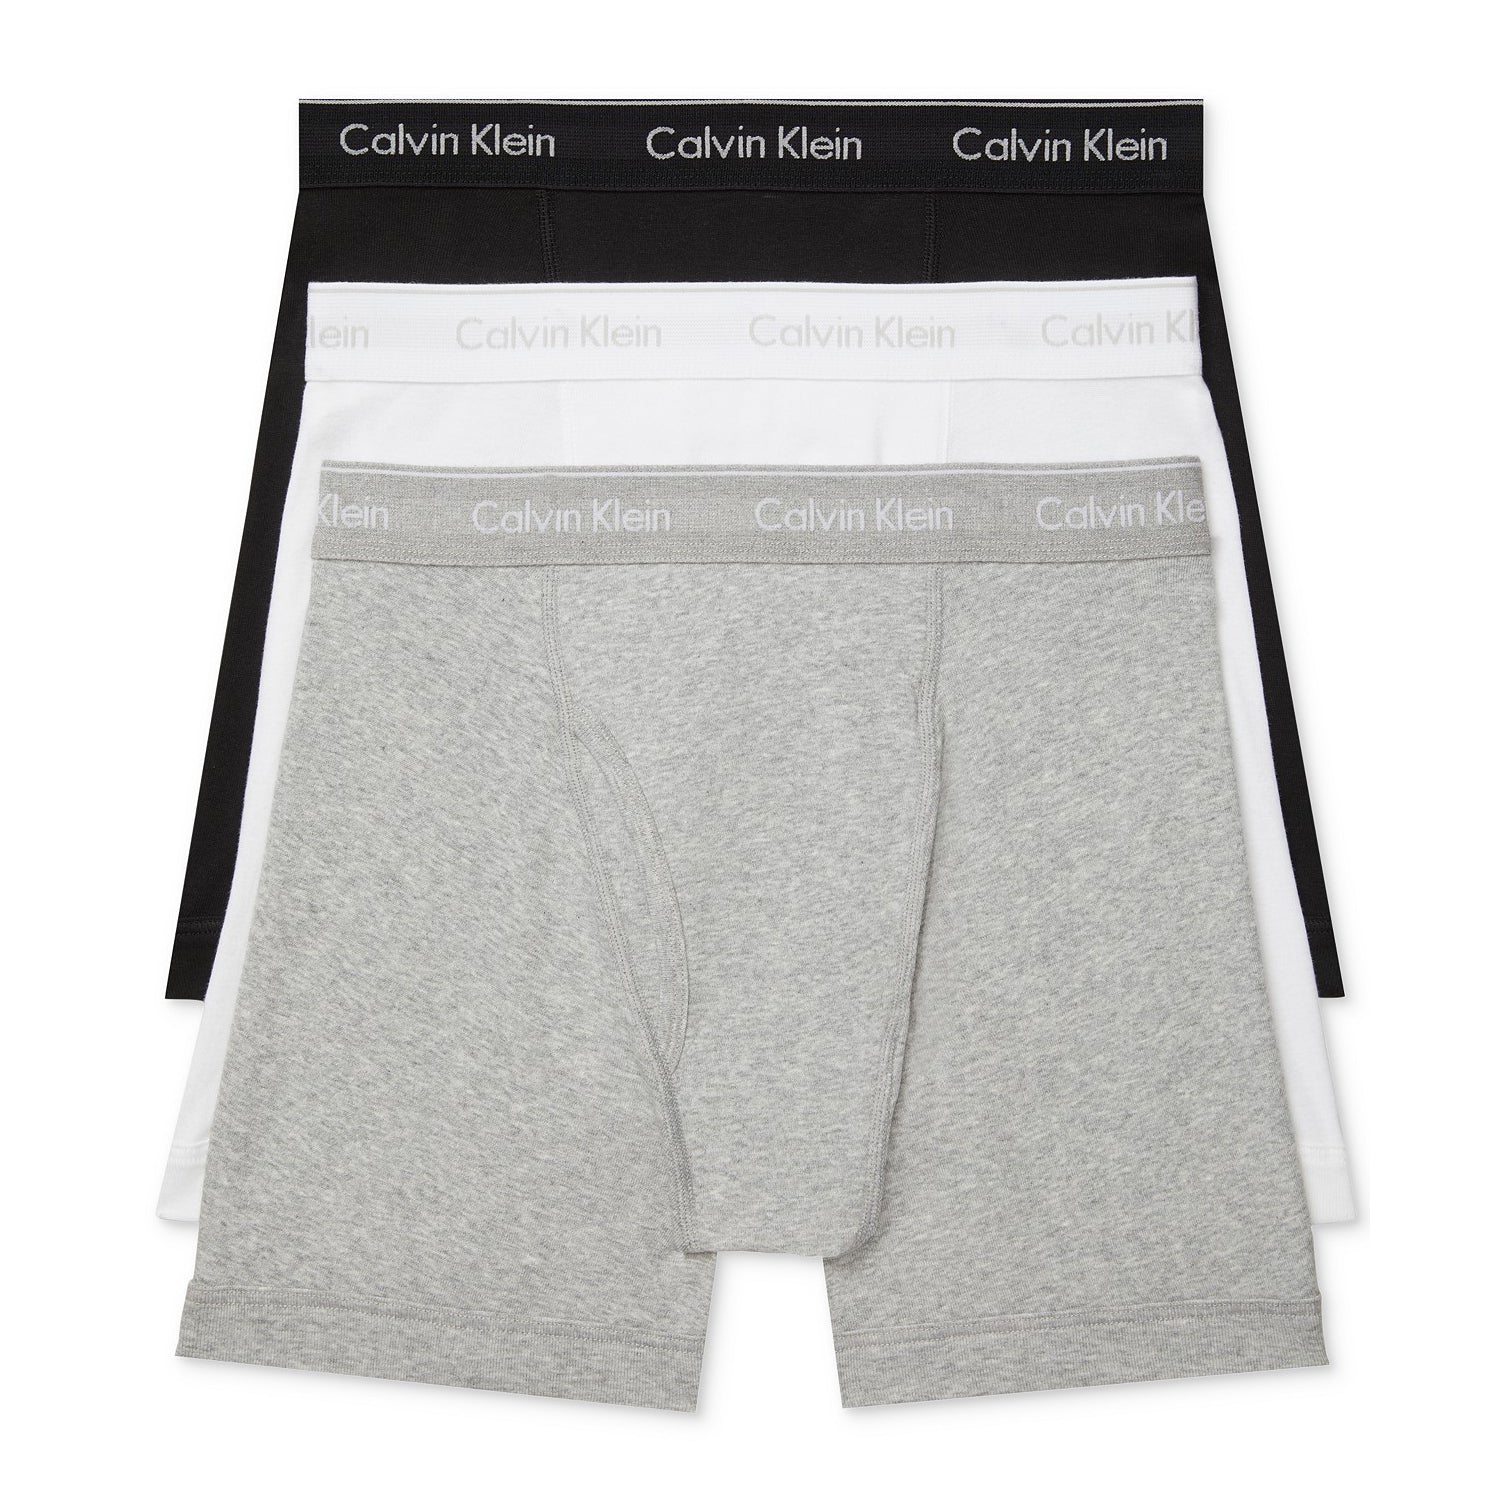 Calvin Klein Men's 3-Pack Cotton Classics Boxer Briefs (NB4003-900